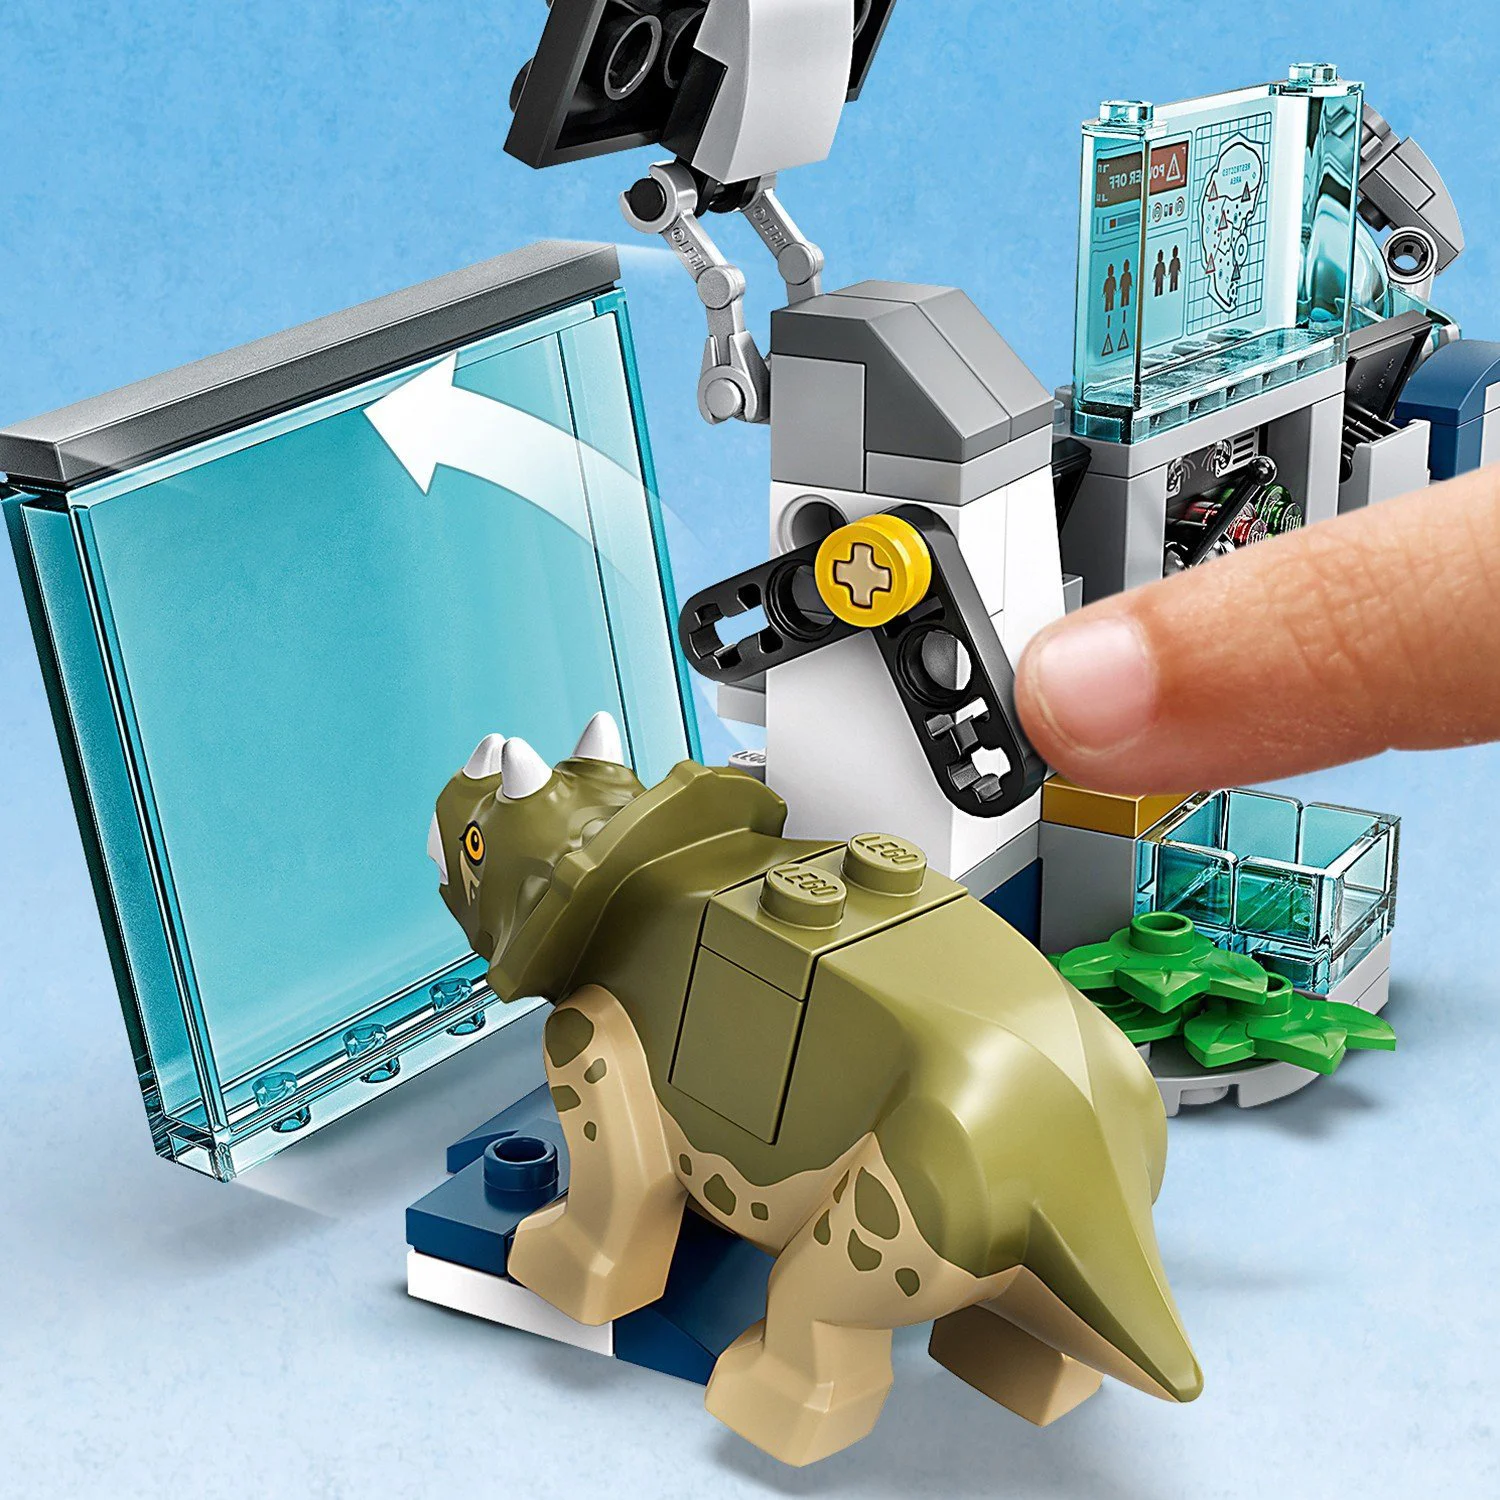 Lego Jurassic World Лаборатория доктора Ву, Пебег детёнышей динозавра